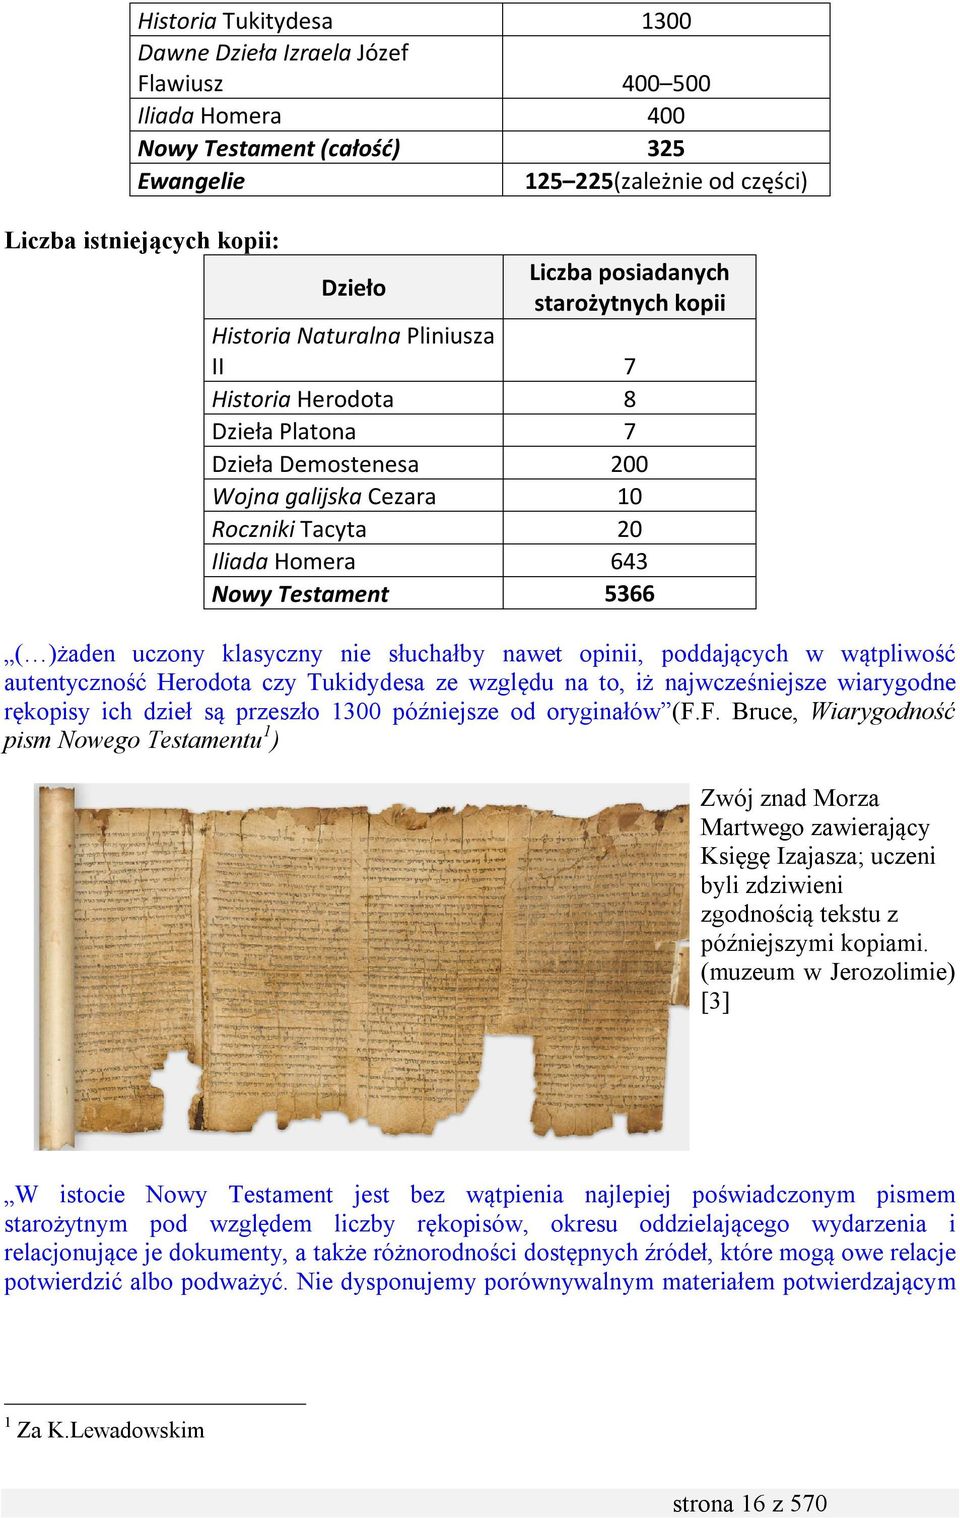 Testament 5366 ( )żaden uczony klasyczny nie słuchałby nawet opinii, poddających w wątpliwość autentyczność Herodota czy Tukidydesa ze względu na to, iż najwcześniejsze wiarygodne rękopisy ich dzieł